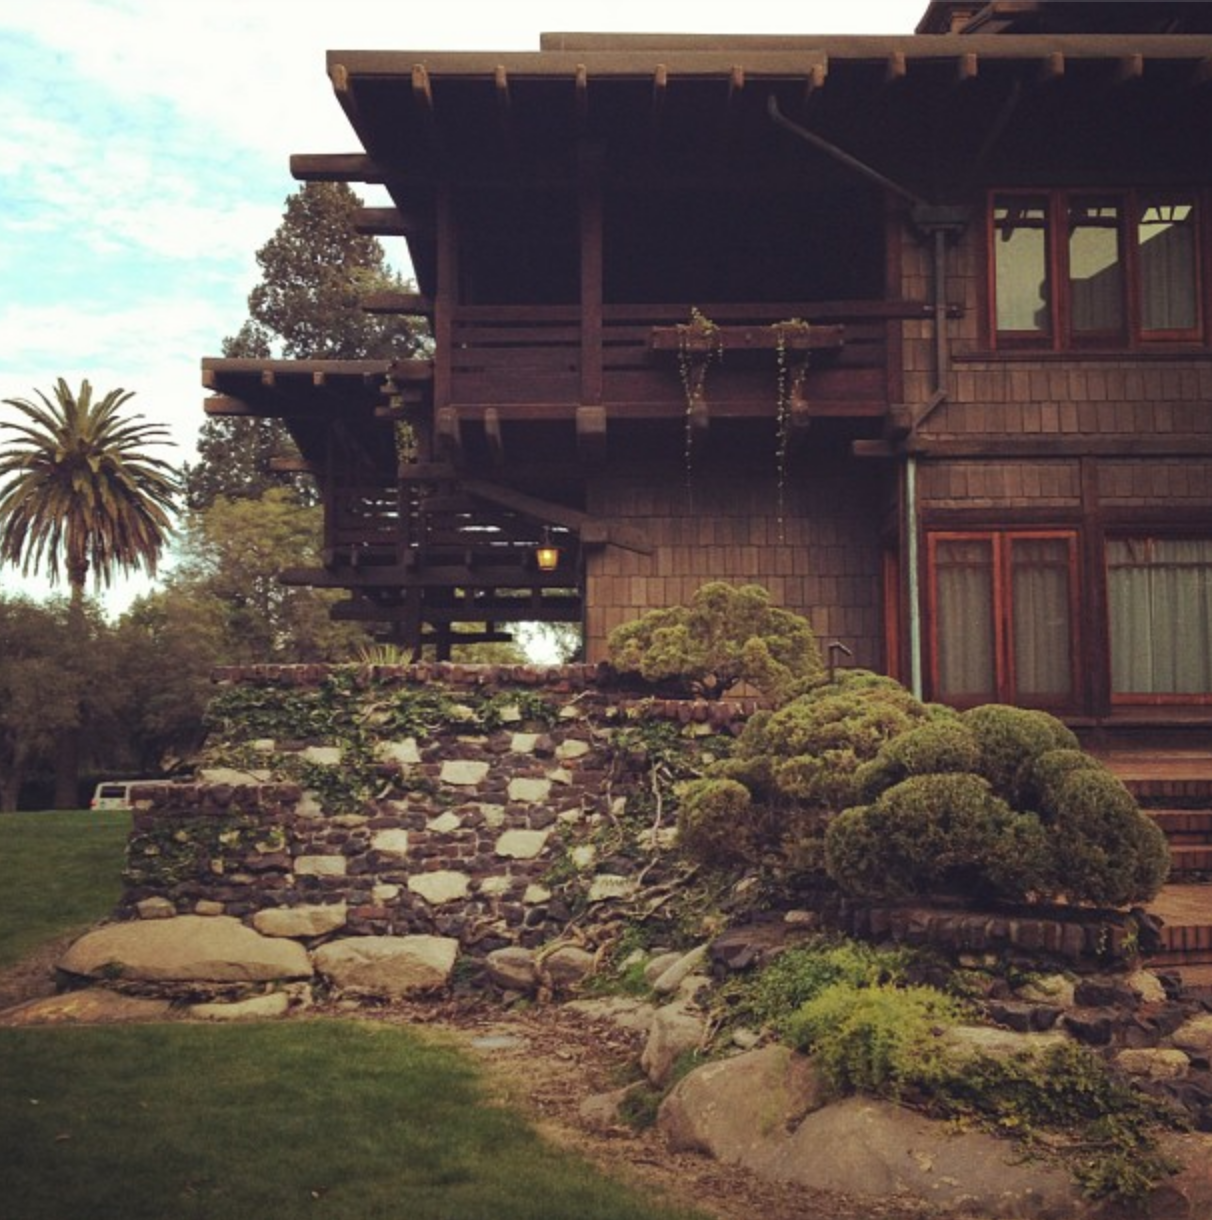 Pasadena, CA - Gamble House 2012.png